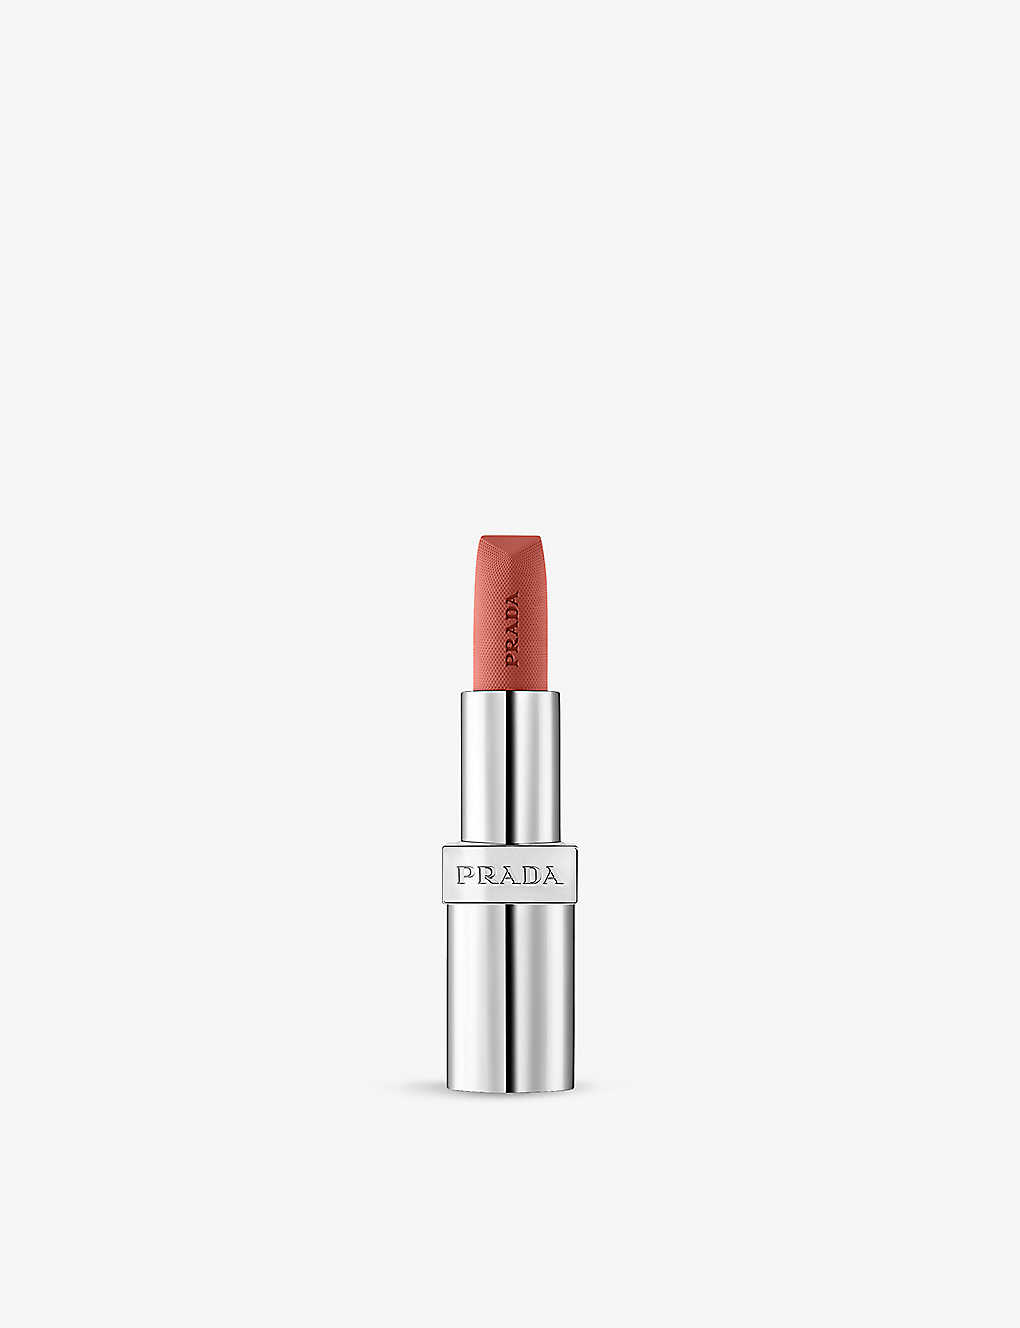 Prada Soft Matte Monochrome Refillable Lipstick 3.8g In Tiepolo